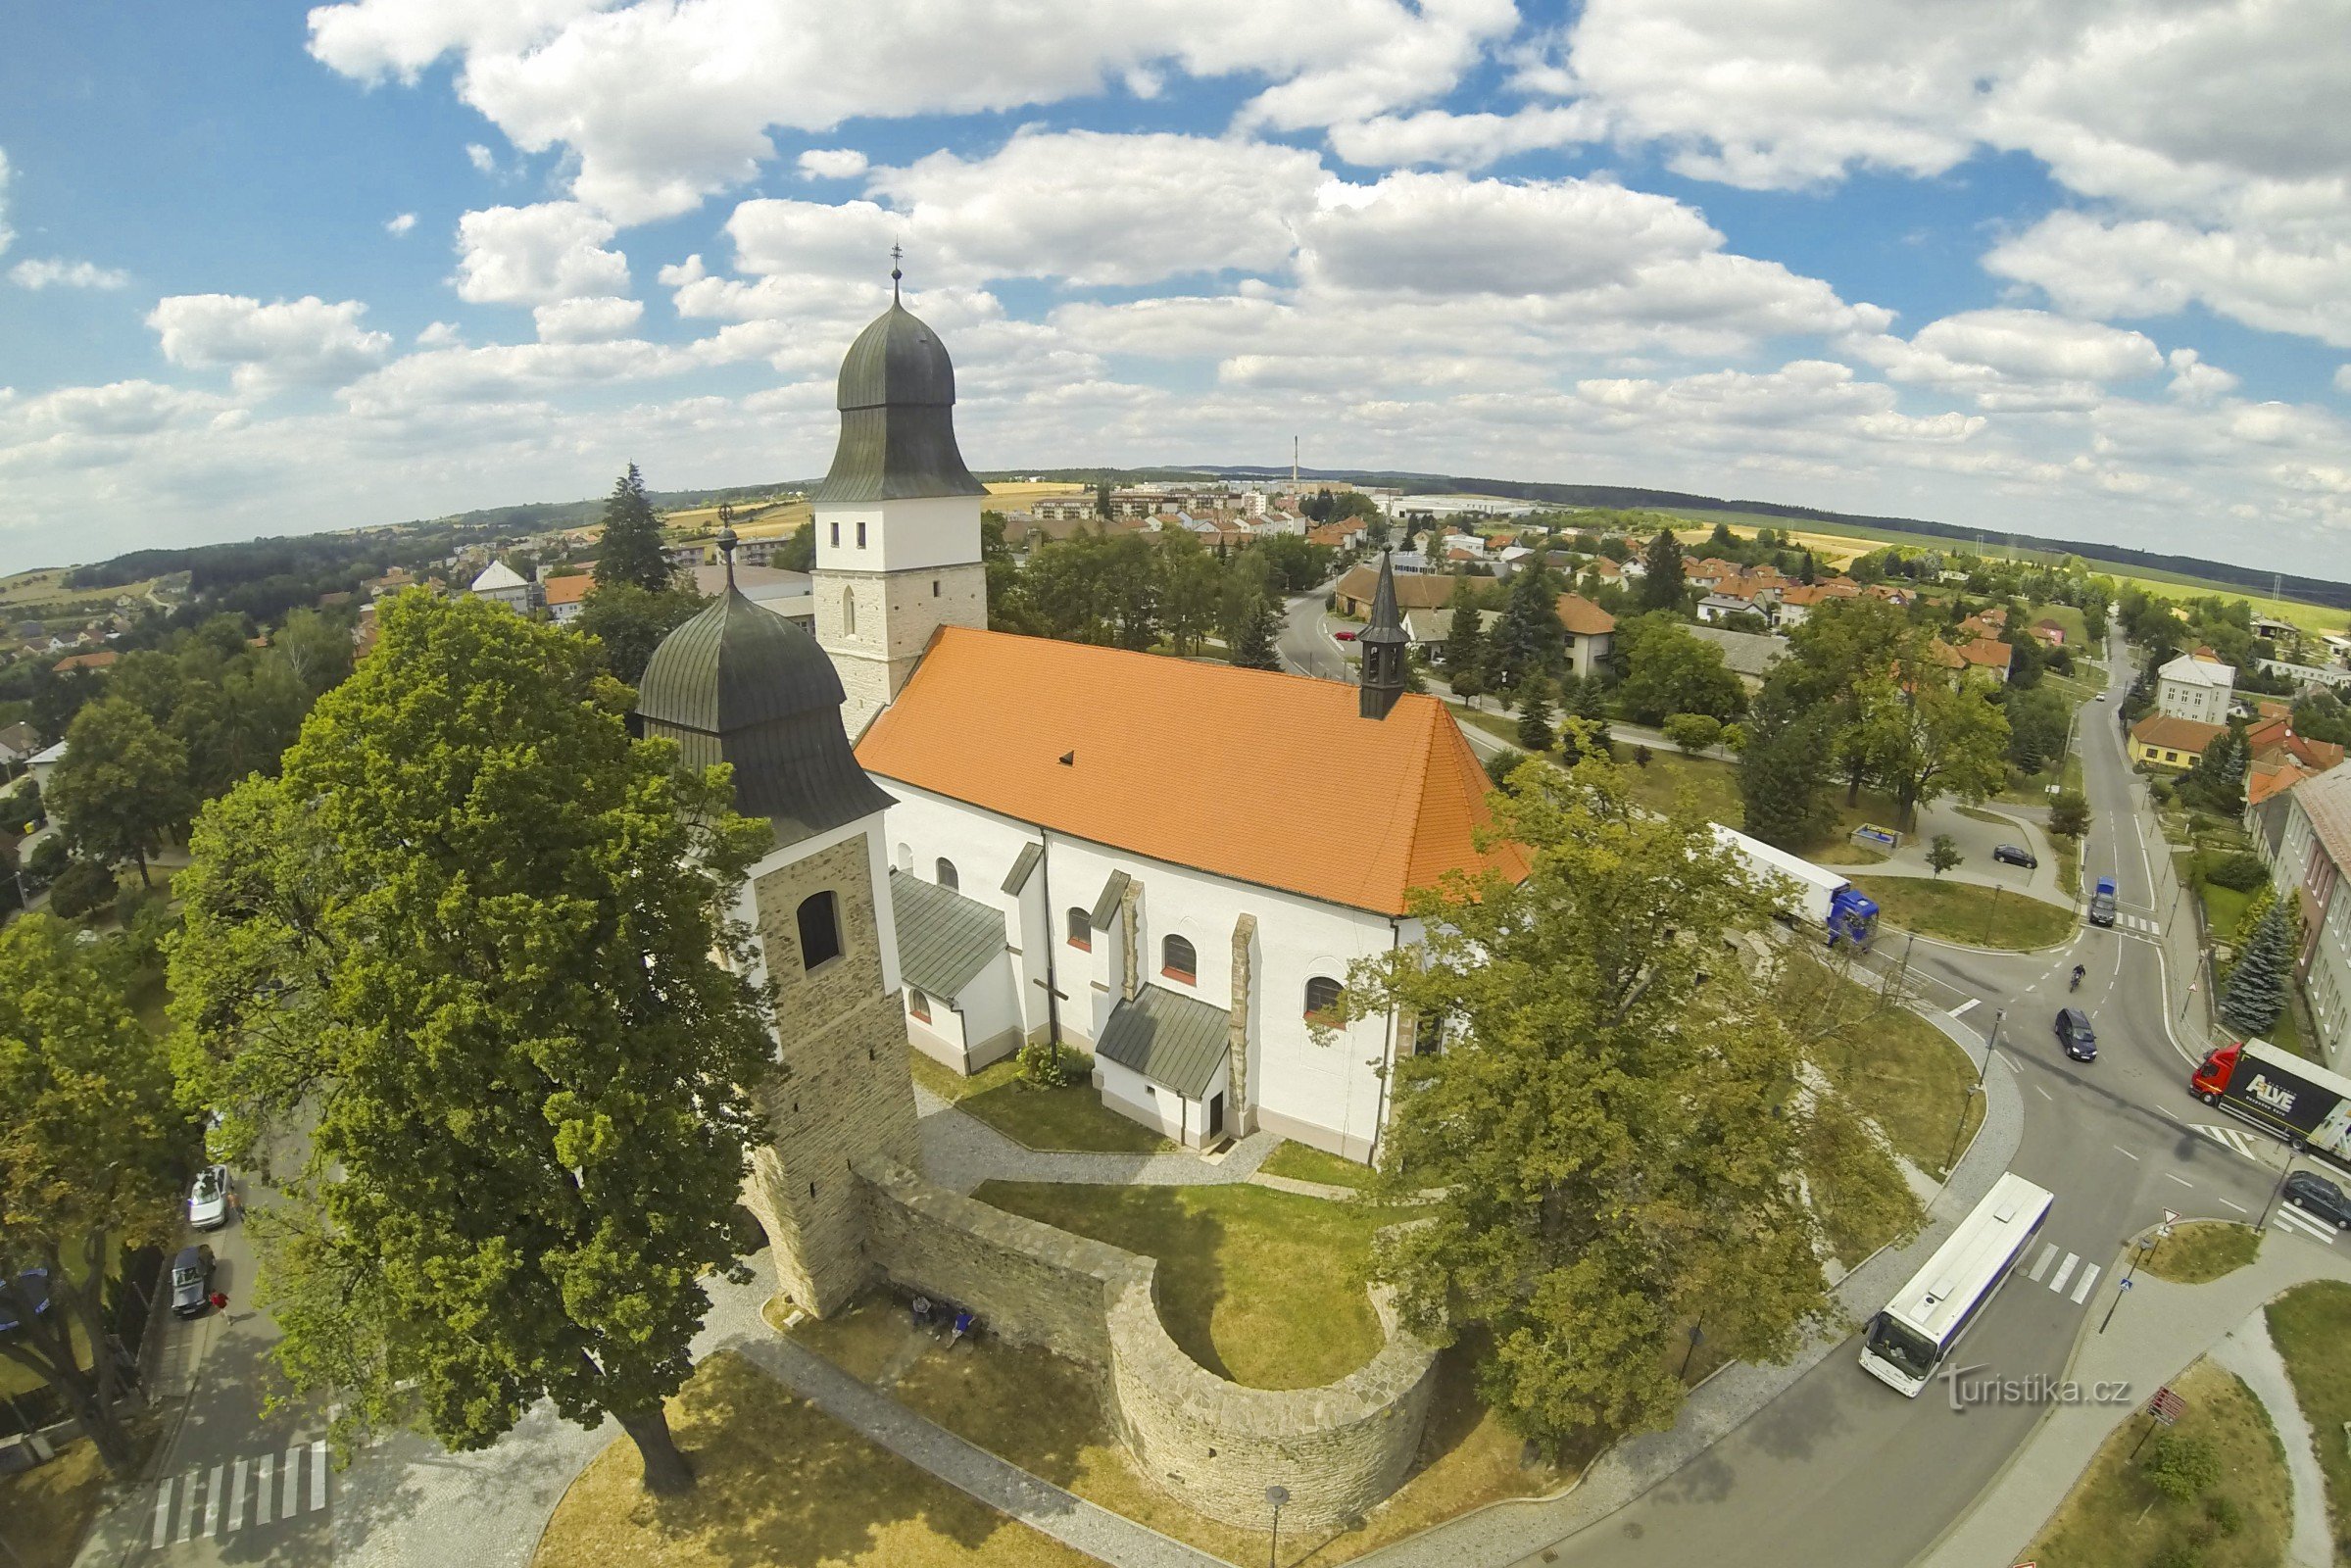 Byen Velká Biteš